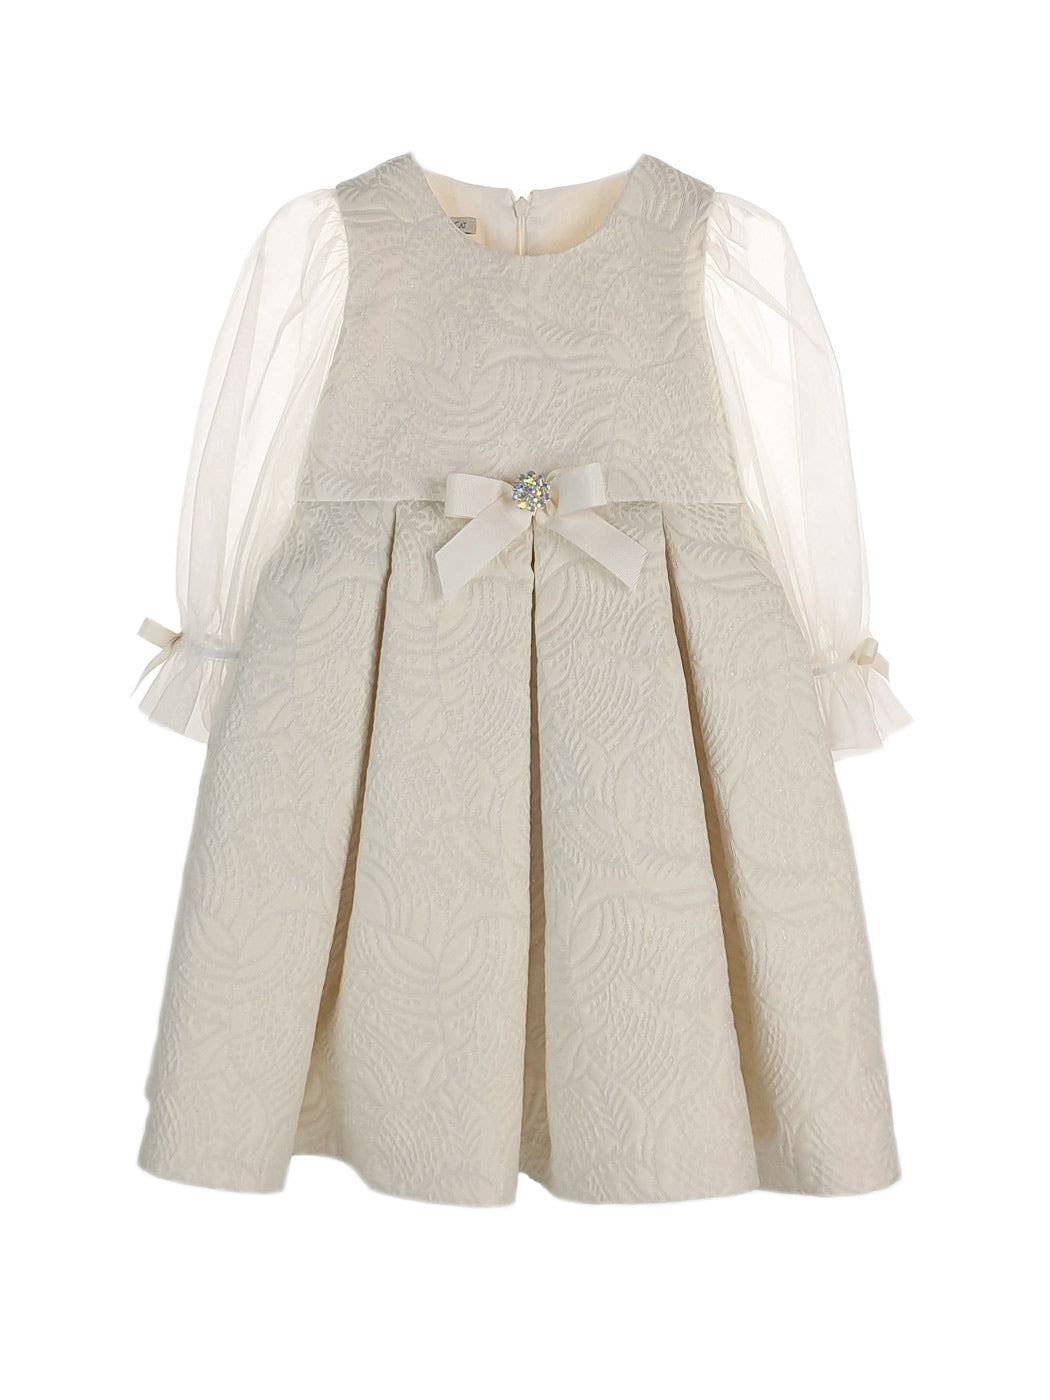 Baby's Brocade Dress with tulle sleeve - EDUARDA Ecru